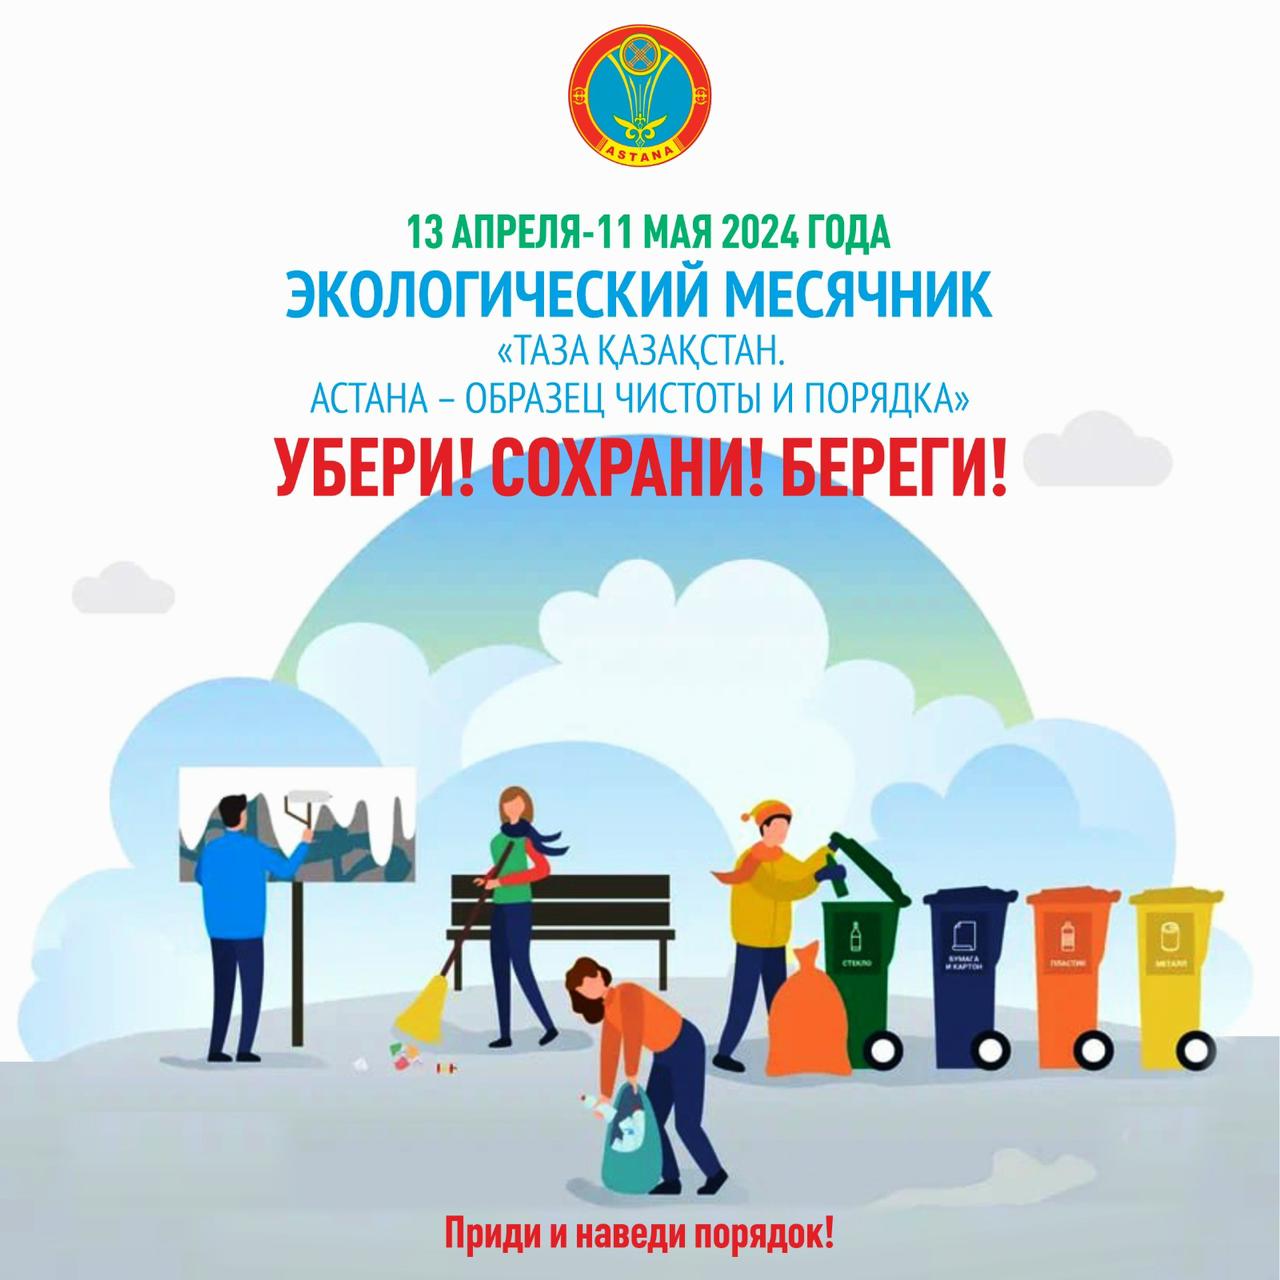 Уважаемые жители, работники малого и среднего бизнеса, представители ОСИ! Приглашаем вас 13 апреля в 9:00 принять участие в акции "Чистый Казахстан" и внести свой вклад в чистоту нашего города!